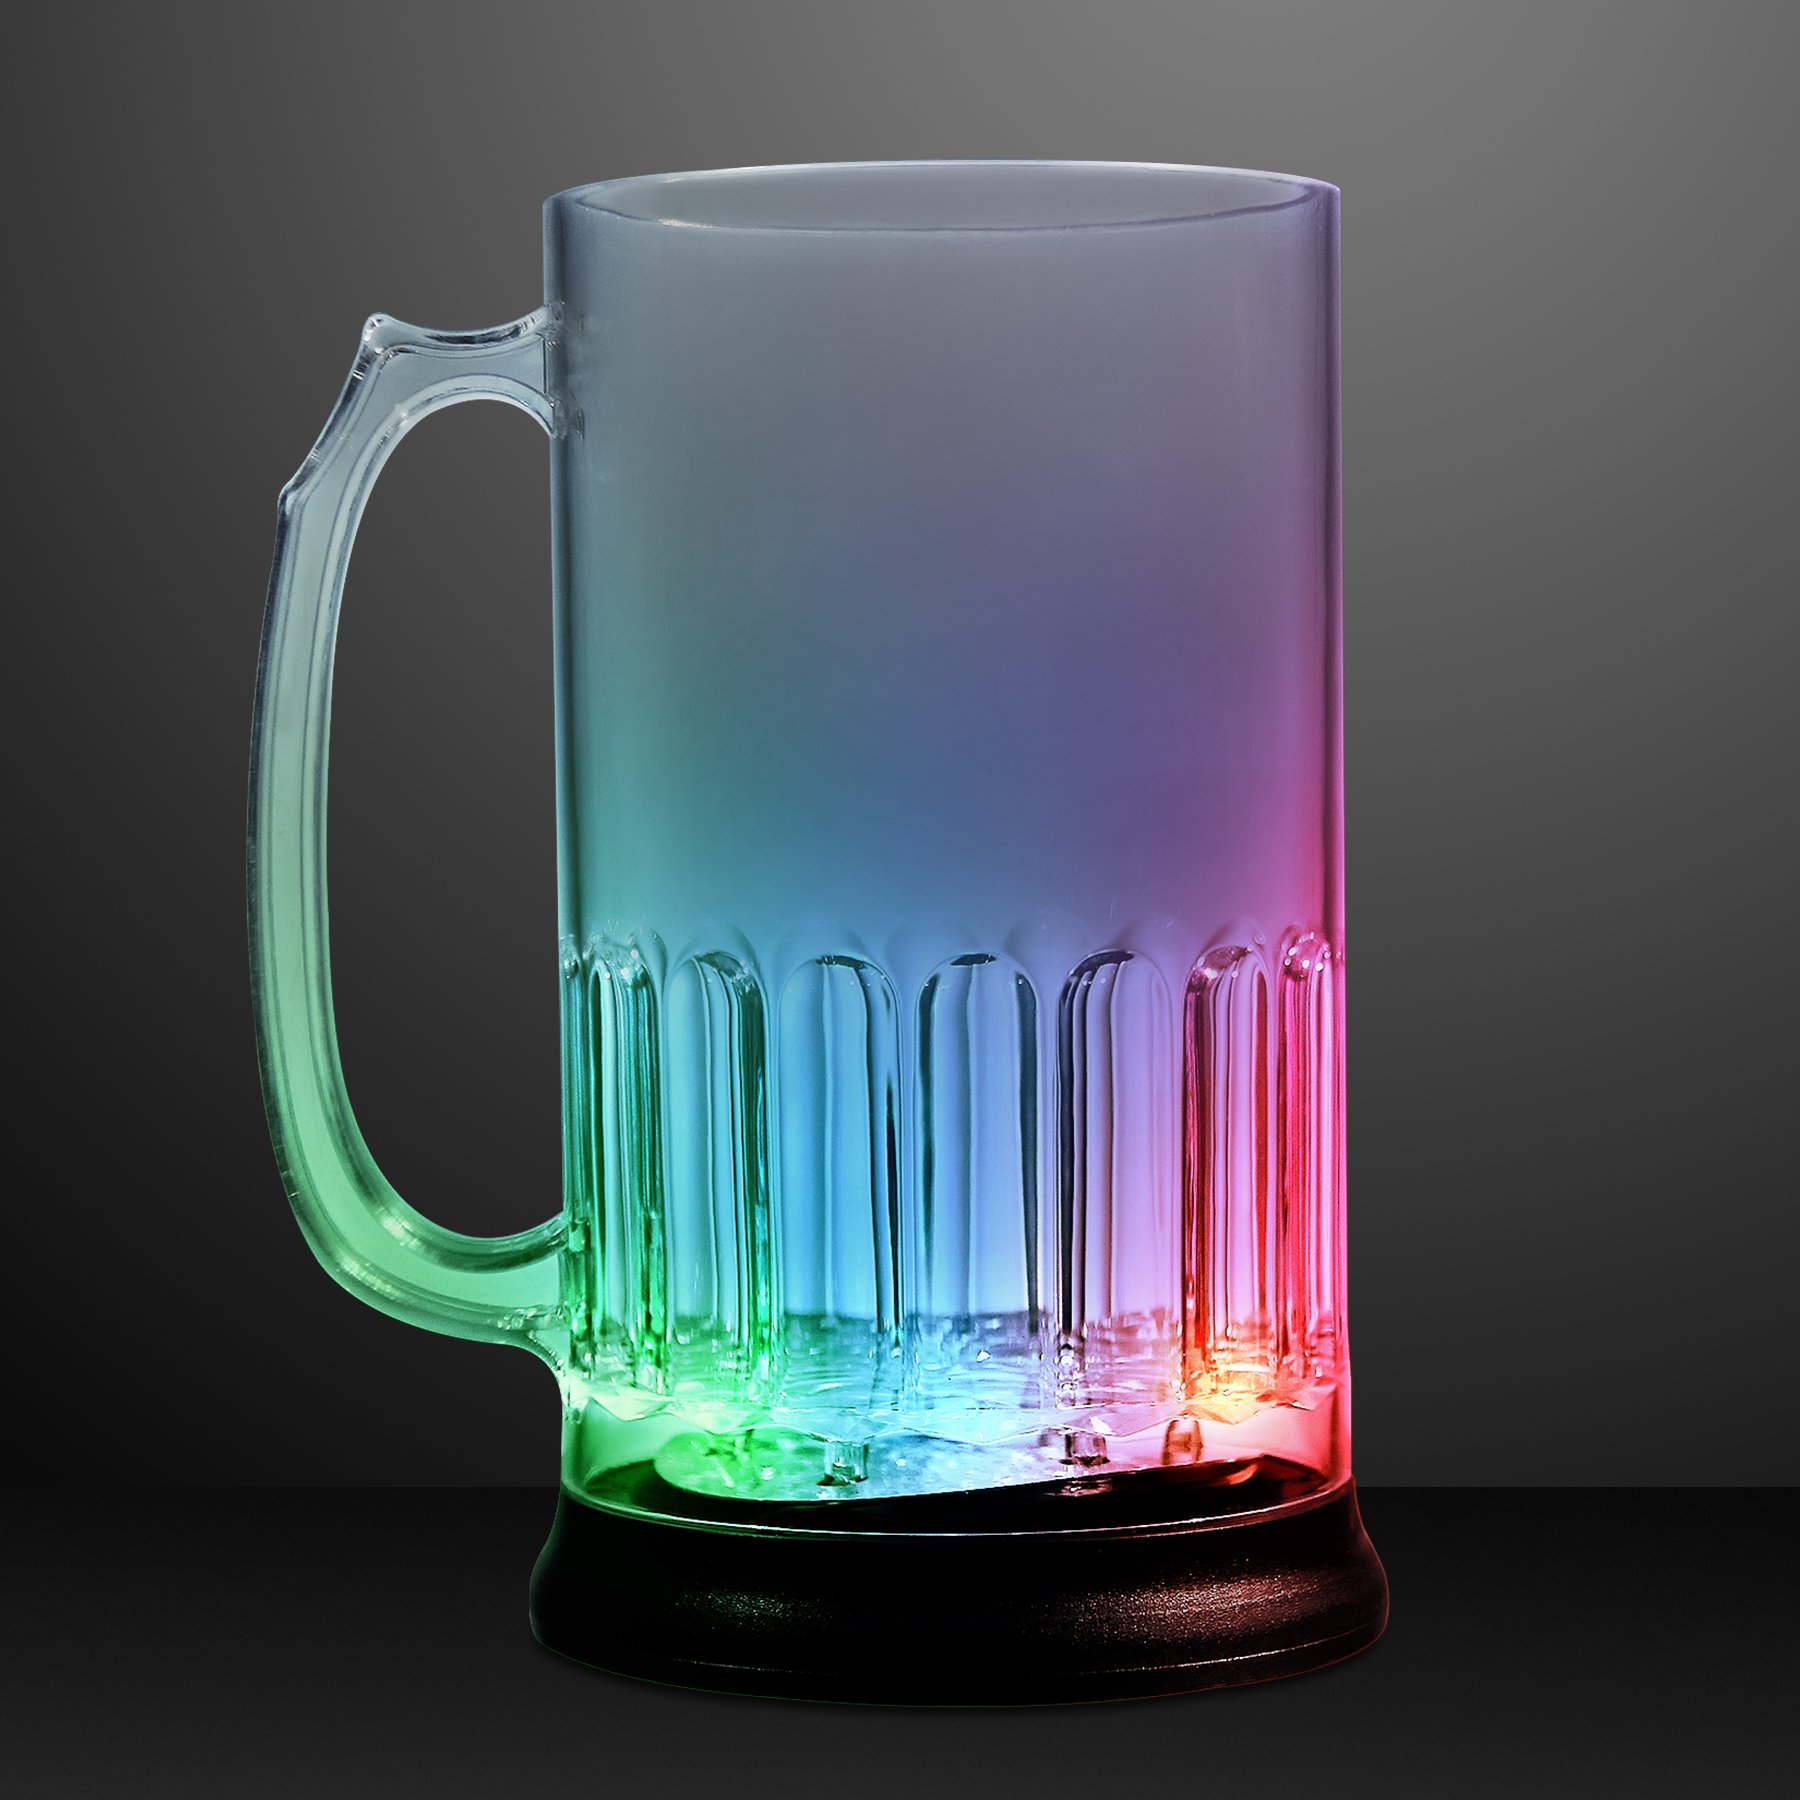 https://www.flashingblinkylights.com/media/catalog/product//1/0/10576_tall_beer_mug_sidev4.jpg